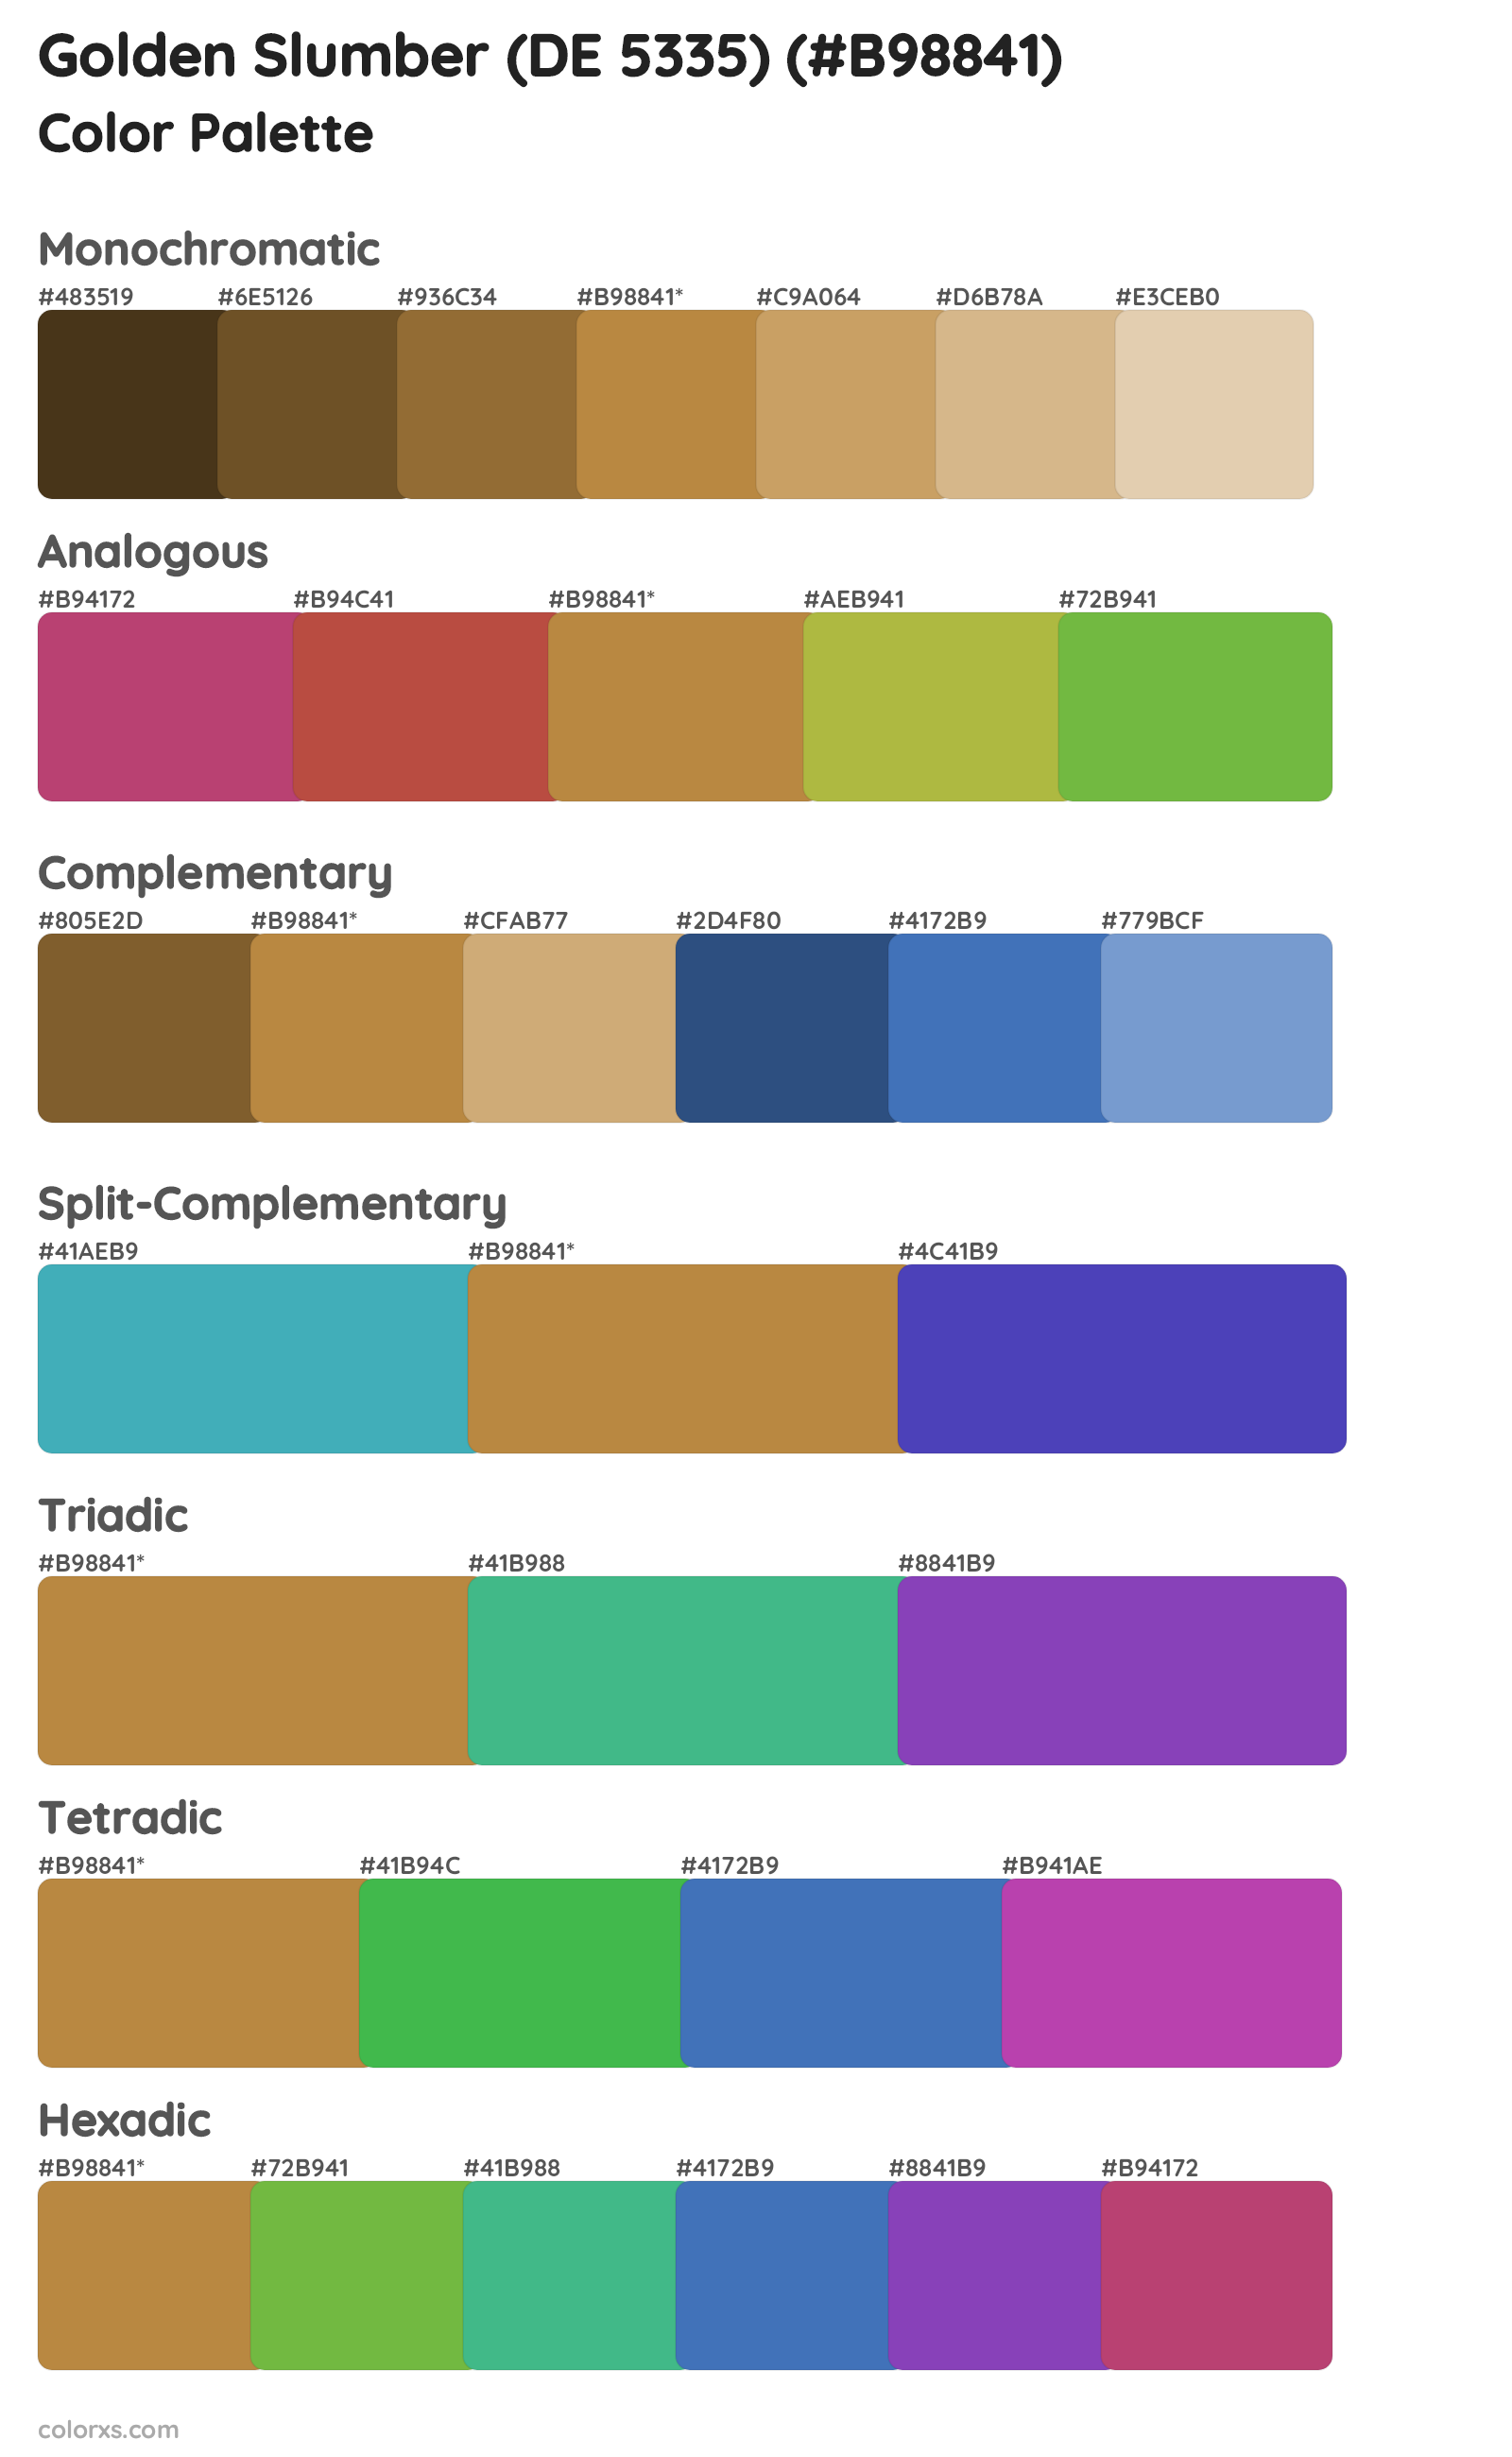 Golden Slumber (DE 5335) Color Scheme Palettes